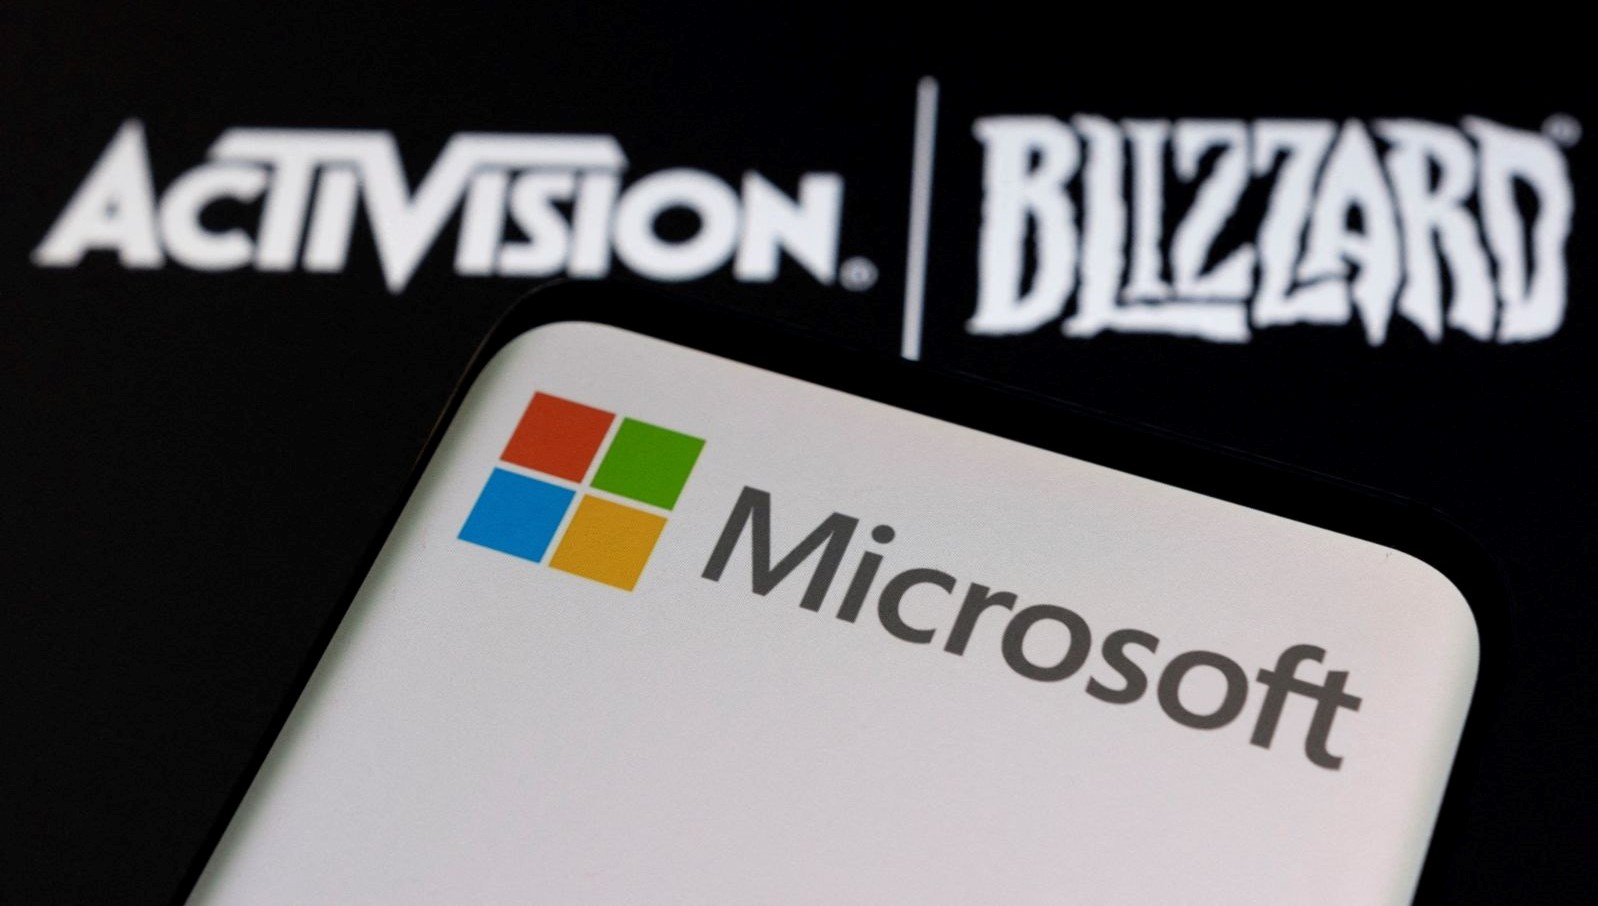 Microsoft Blizzard davasını kazandı: FTC karara itiraz etti